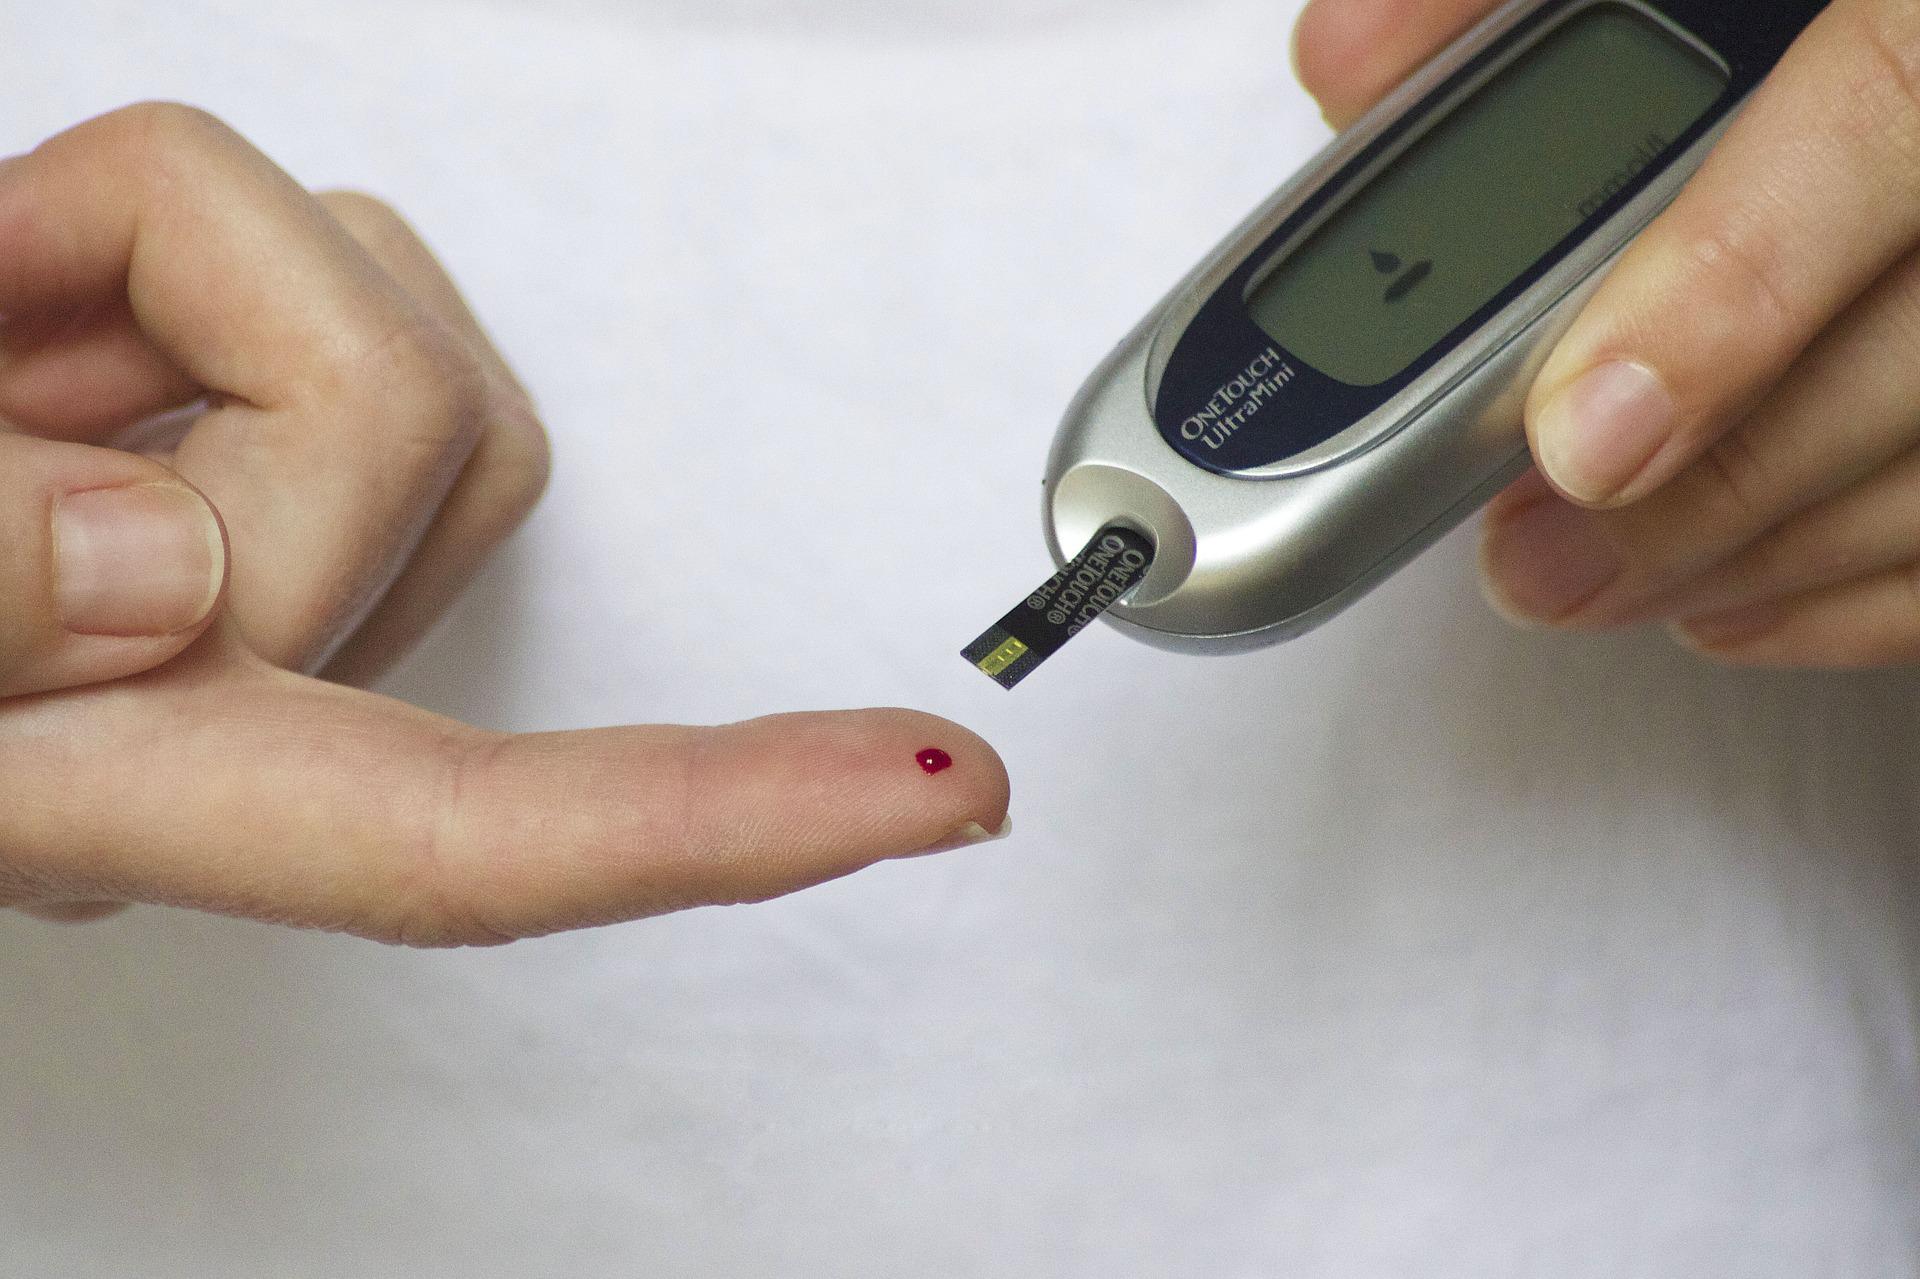 Action Diabète lance sa campagne de dépistage sur les marchés valaisans